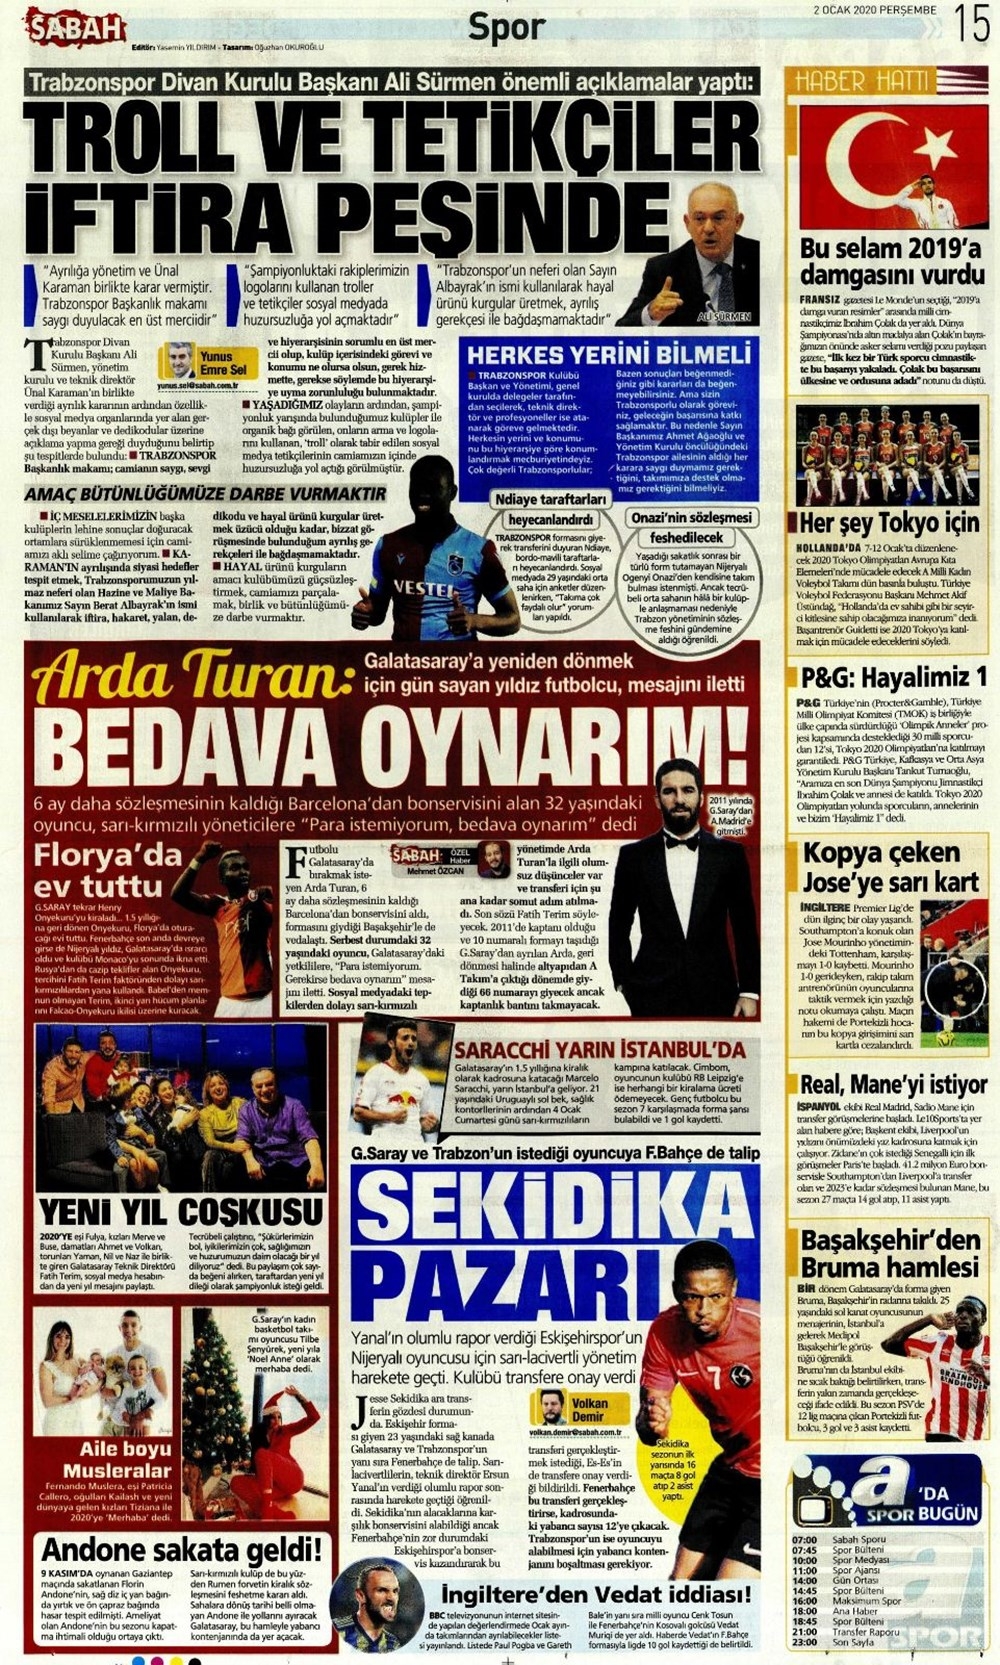 Günün spor manşetleri (2 Ocak 2020) 'Fenerbahçe'den Ben Arfa.. 2